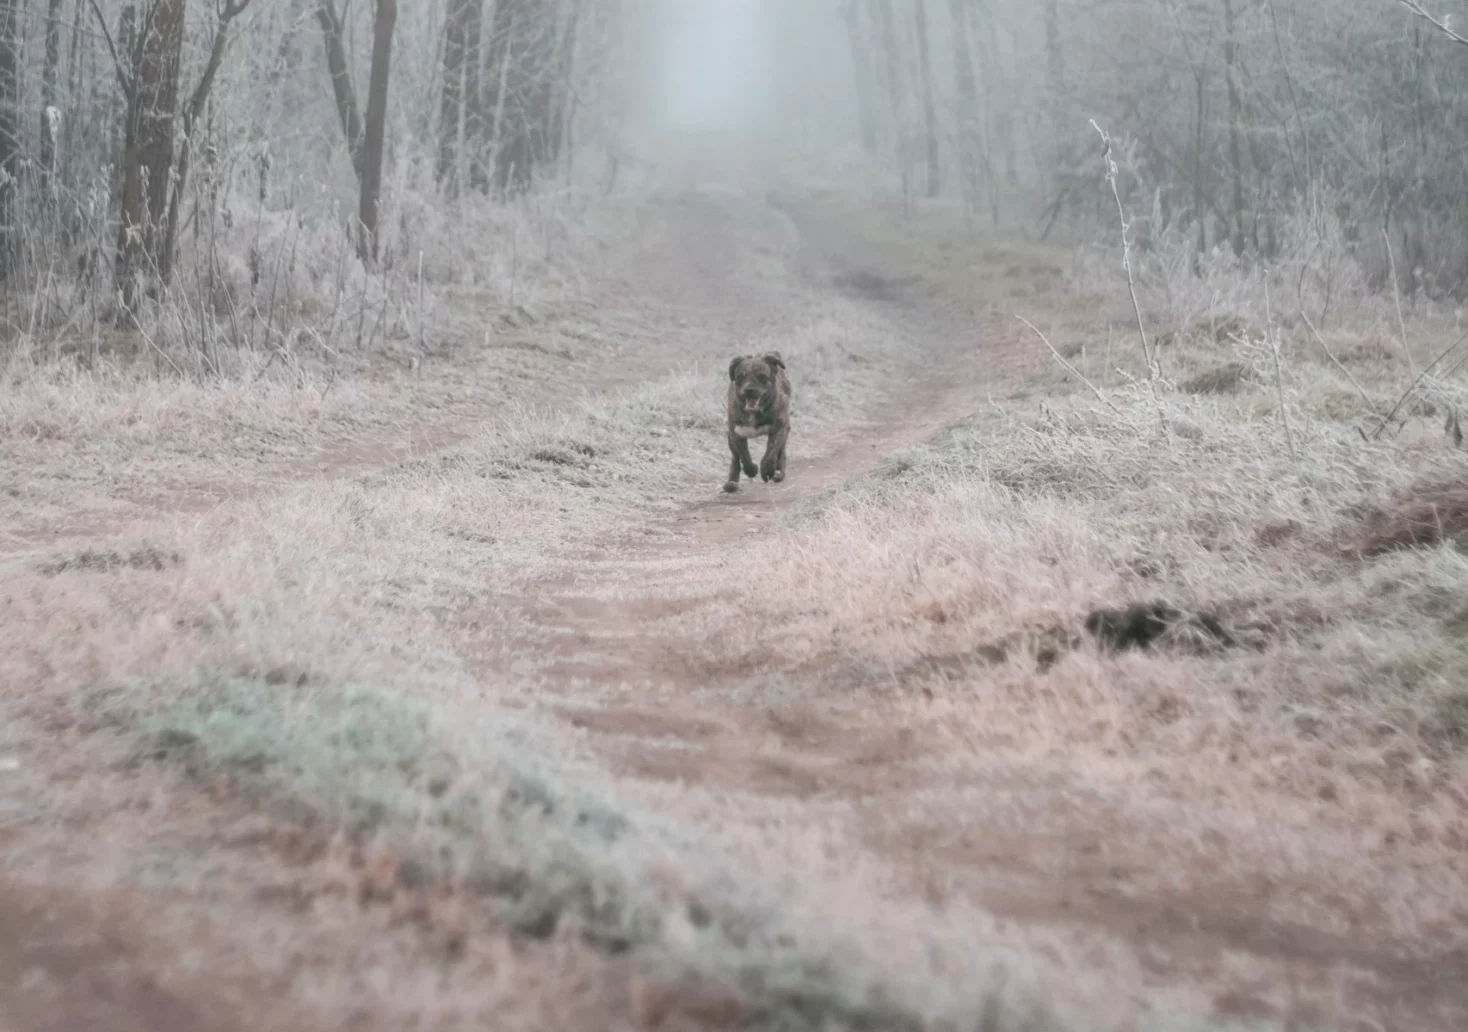 Bild auf 5min.at zeigt einen Hund im Wald